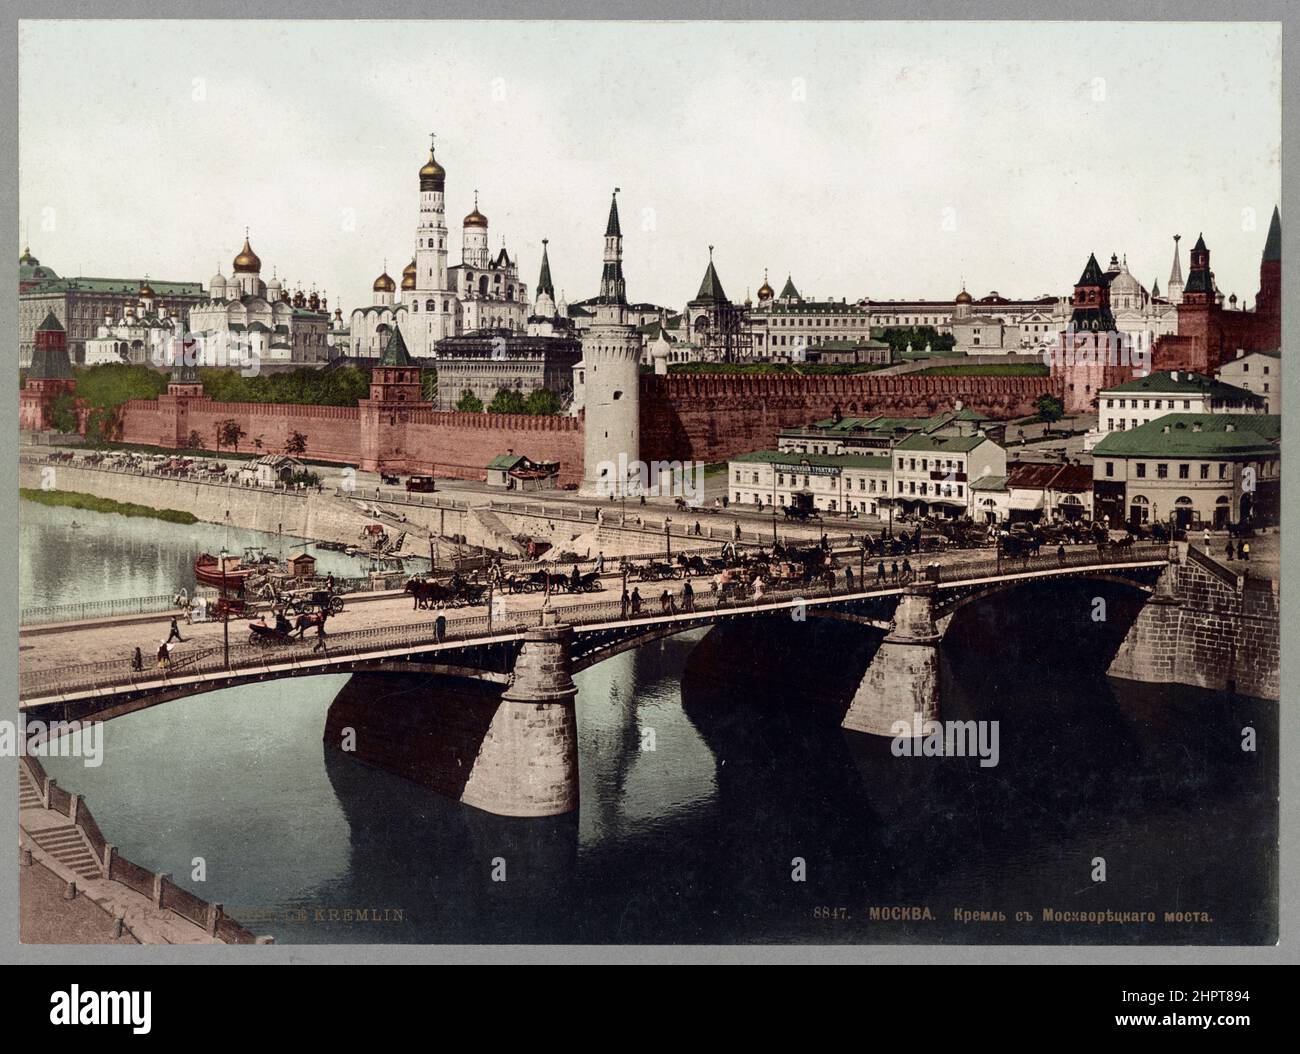 Vintage-Foto des Moskauer Kremls von der Moskvoretsky-Brücke. Russisches Reich. 1905. 1890-1906 Stockfoto